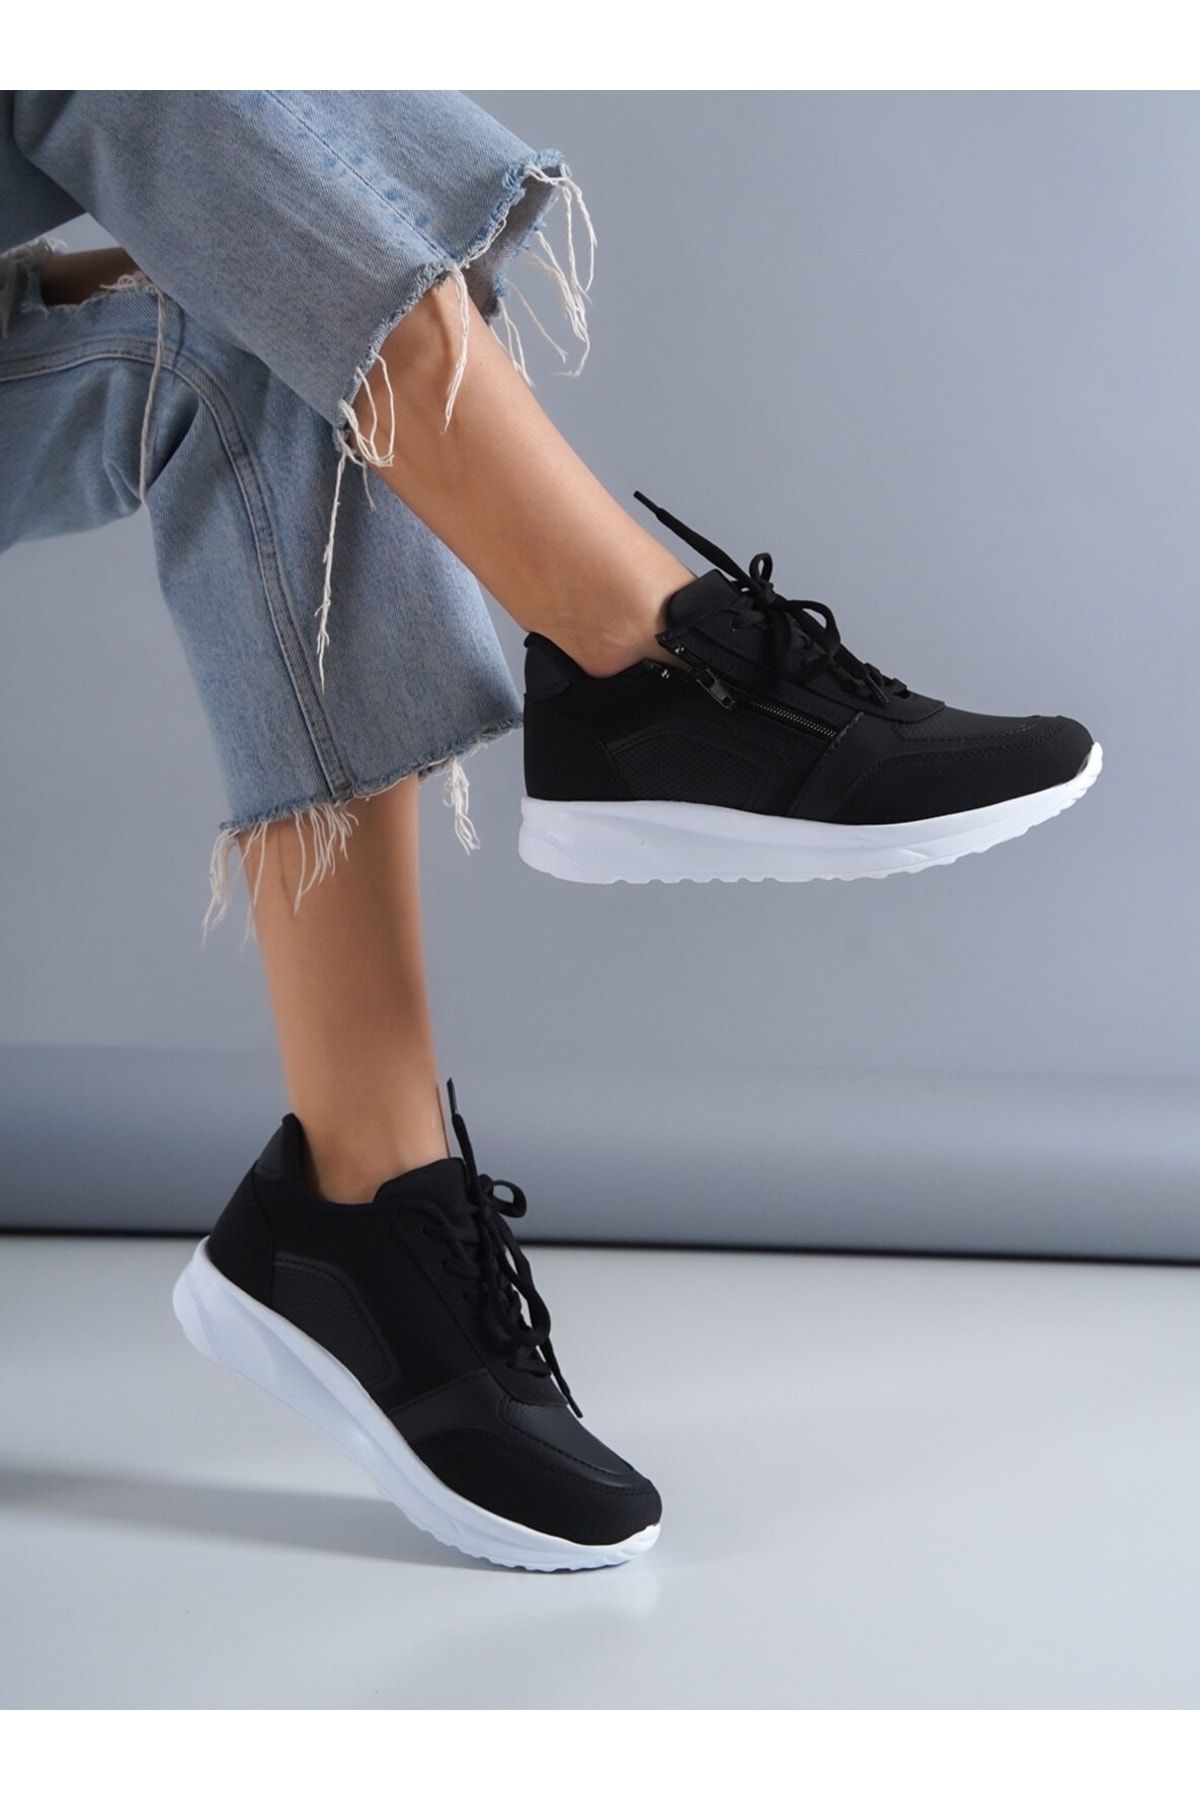 ayakkabıhavuzu Kadın Siyah Spor Ayakkabı